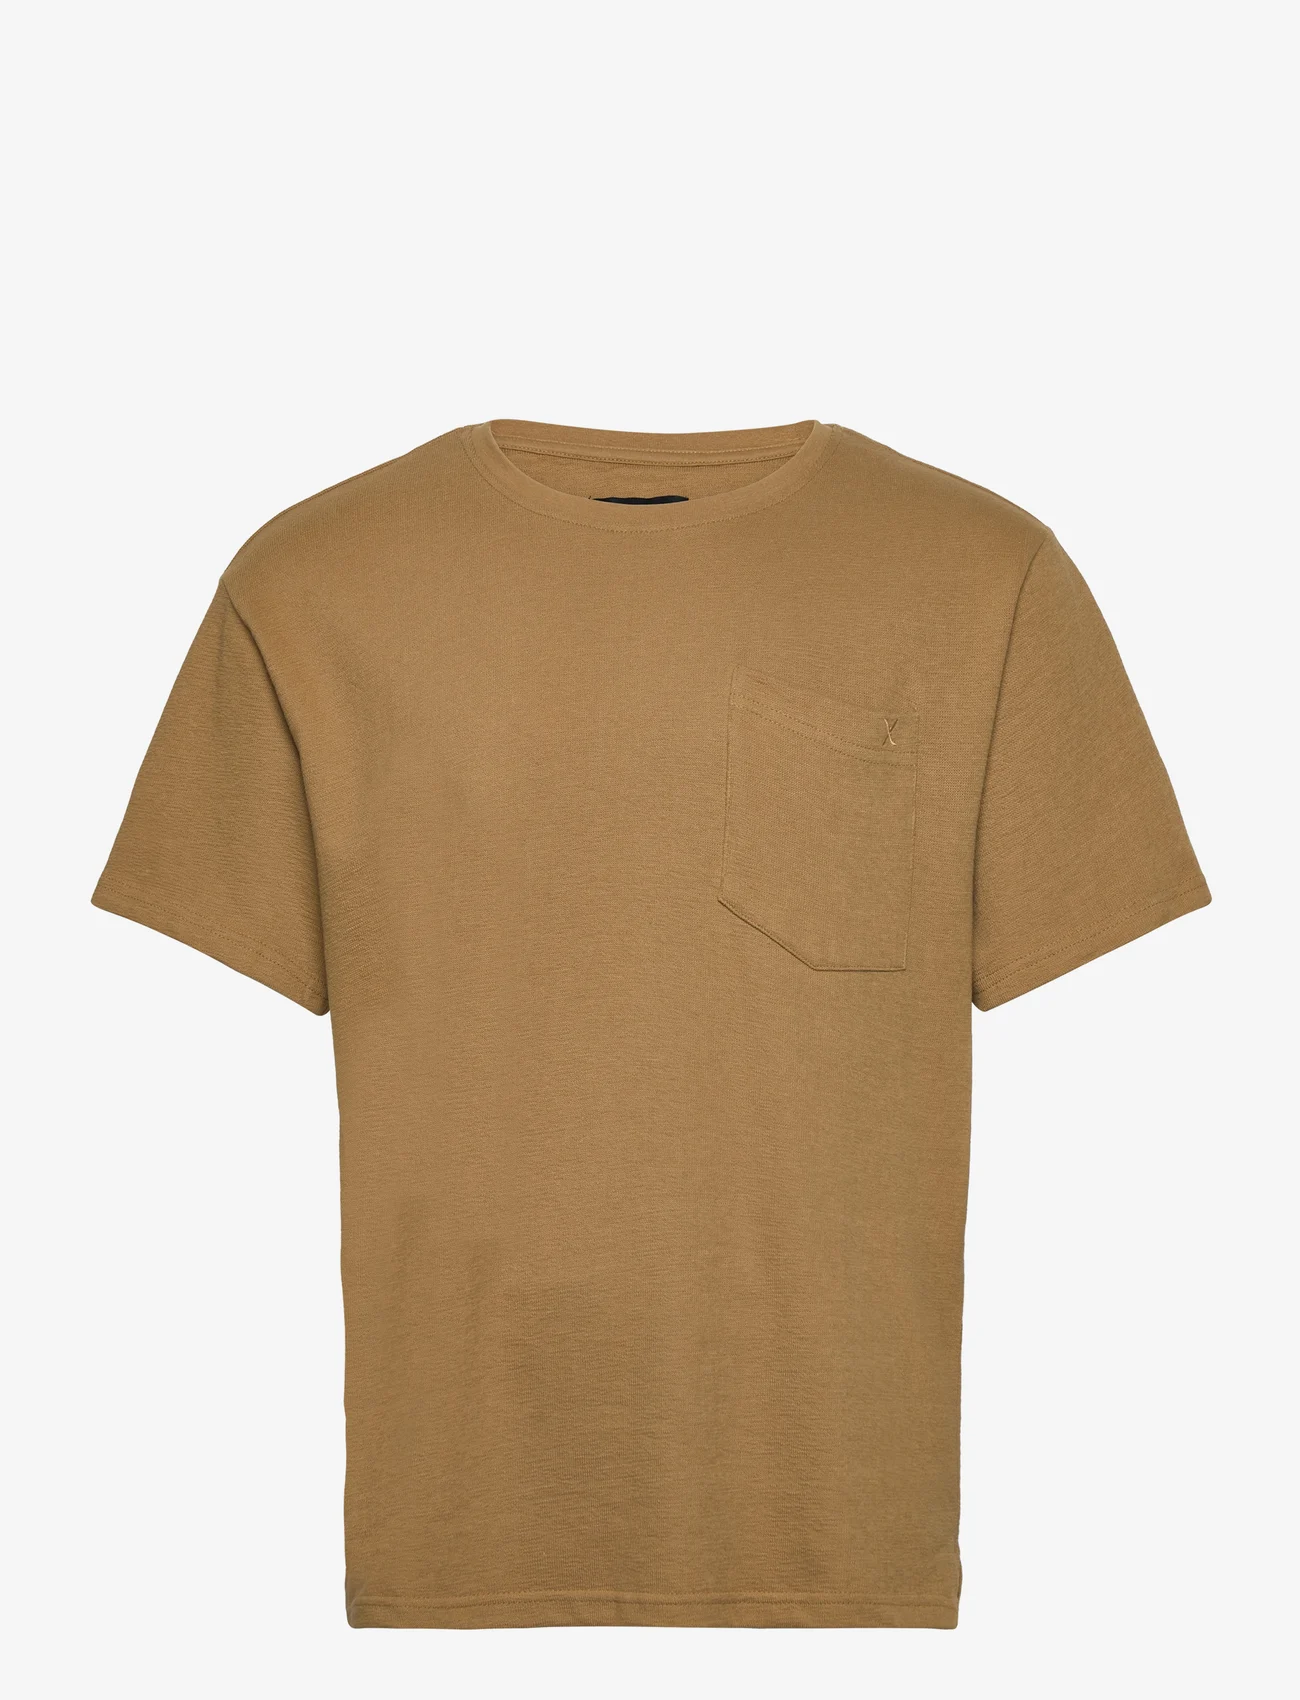 Clean Cut Copenhagen - Calton Structured Tee - basic t-shirts - dark khaki - 0